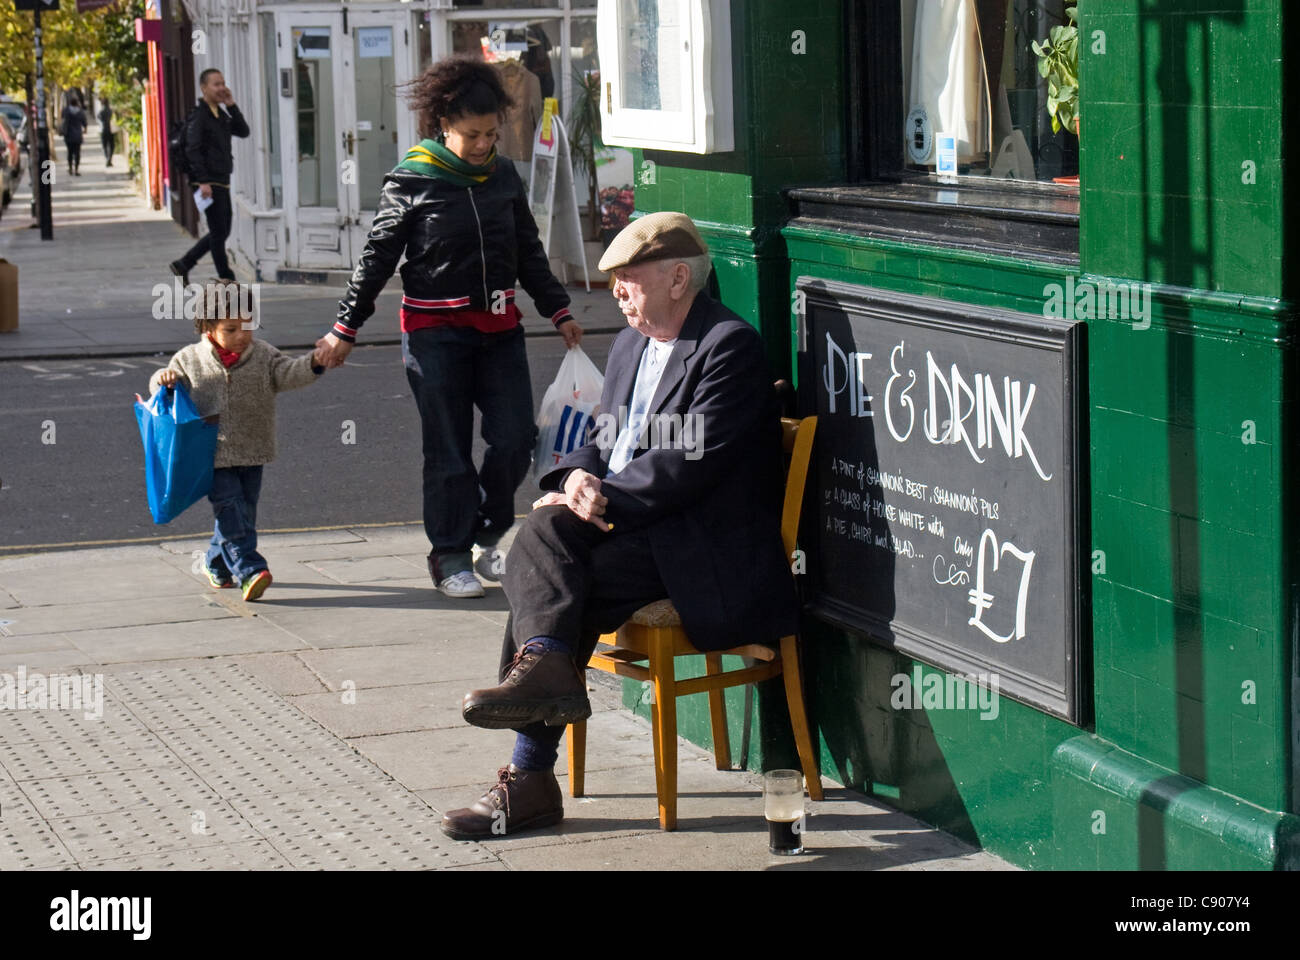 L'homme (et pinte) à l'extérieur de Shannon's pub, Portobello Road, Notting Hill, London, England, UK Banque D'Images